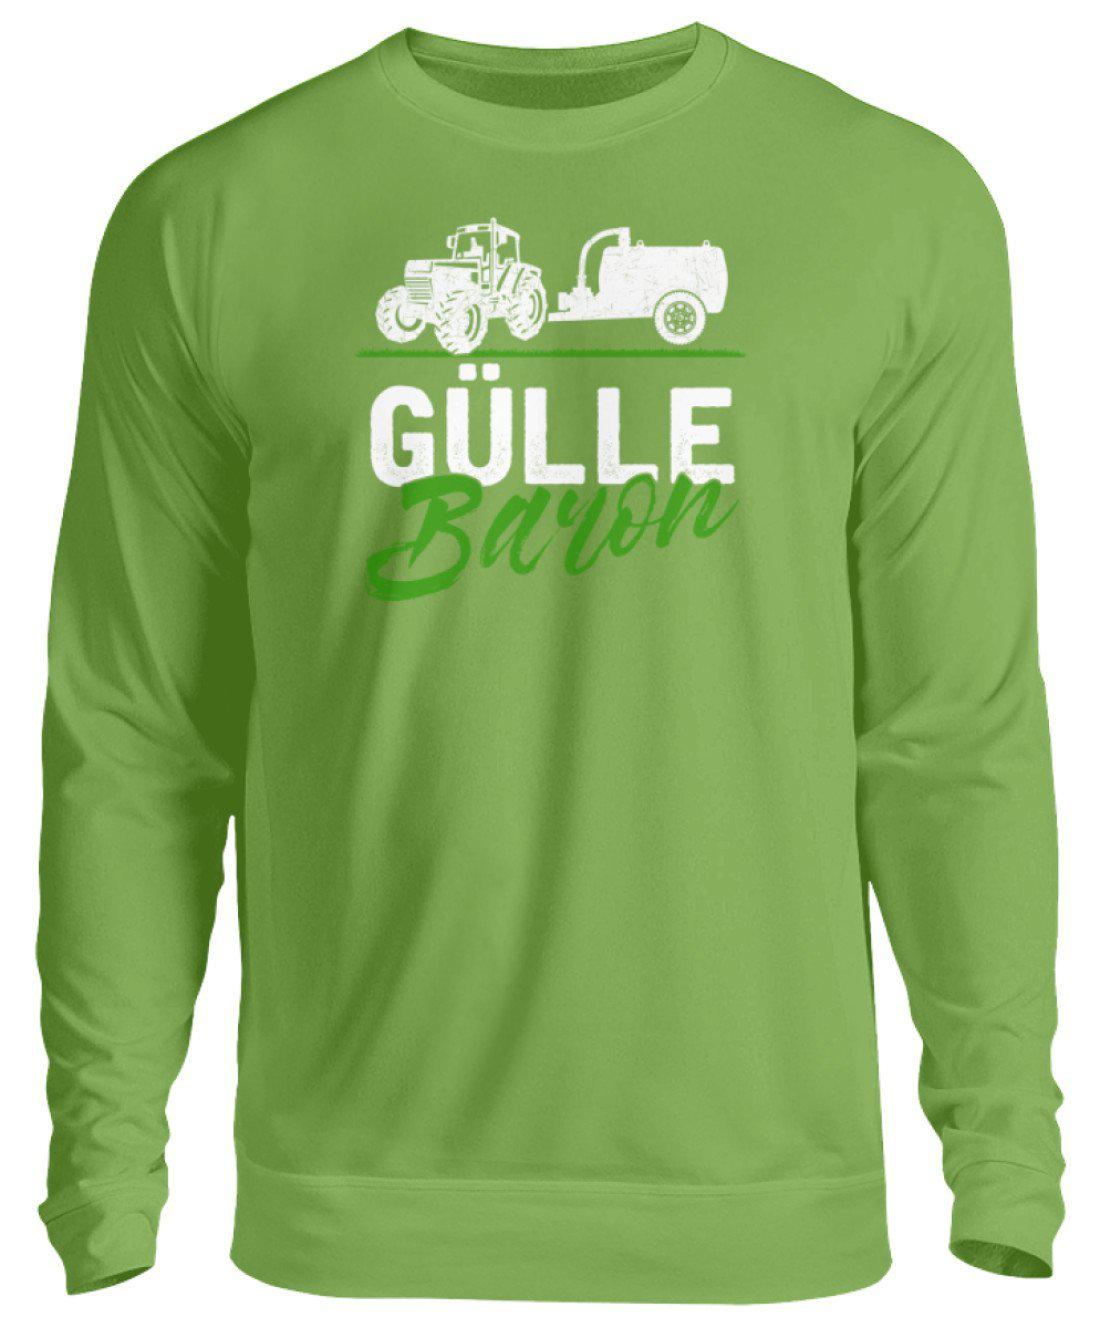 Gülle Baron 2 · Unisex Sweatshirt Pullover-Unisex Sweatshirt-LimeGreen-S-Agrarstarz